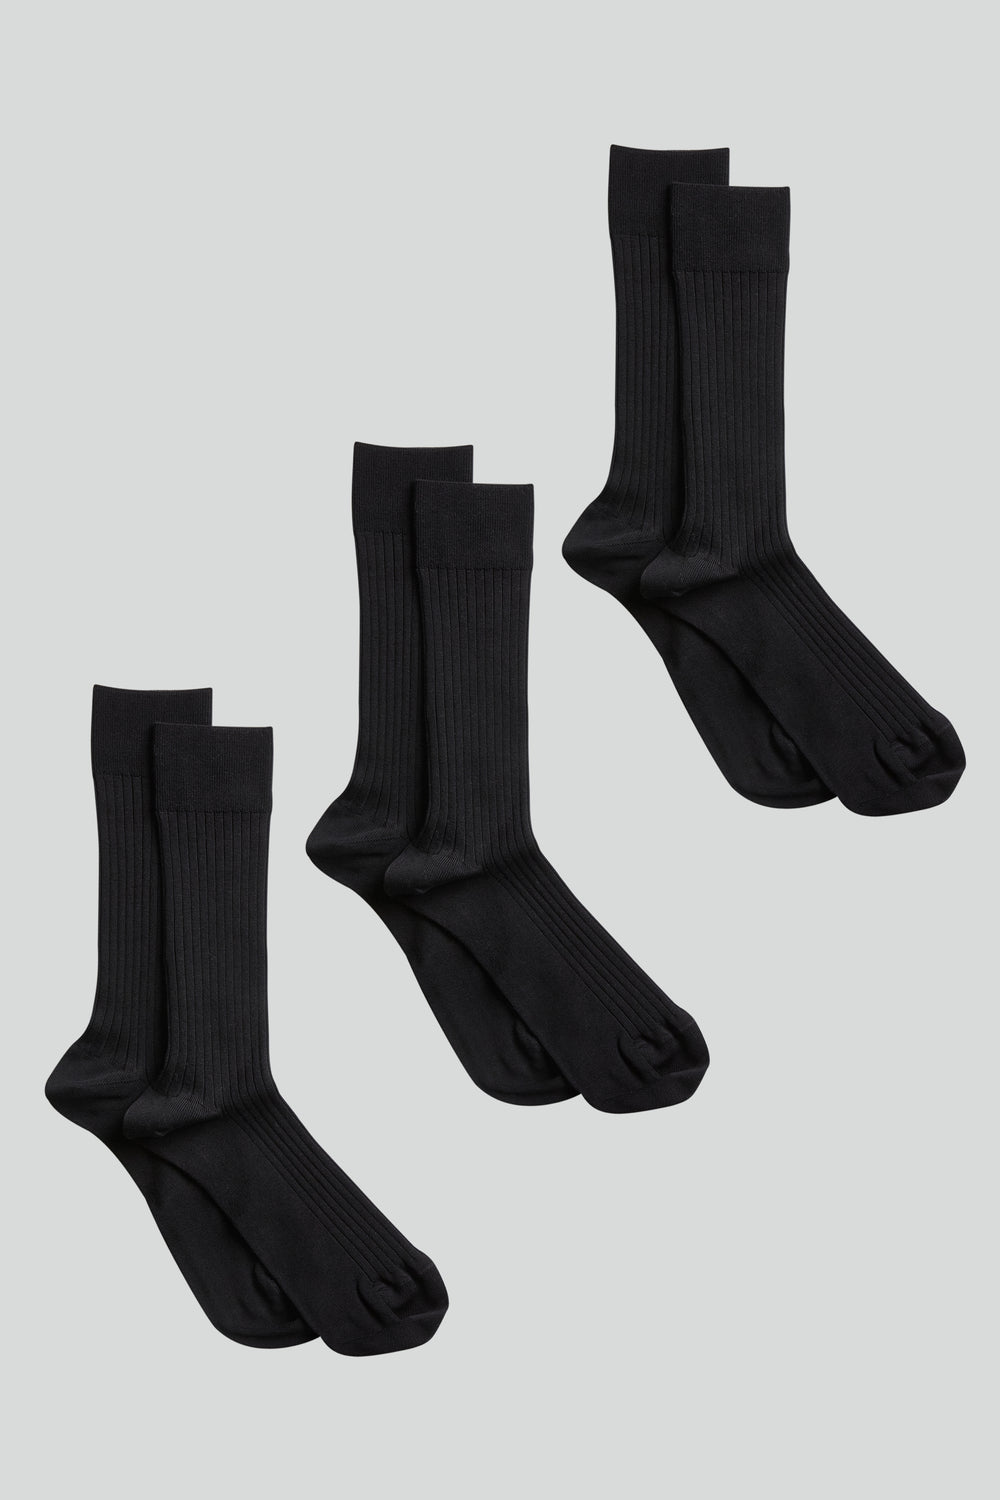 NN07 - Sock Nine 9114 3-Pack in Black | Buster McGee